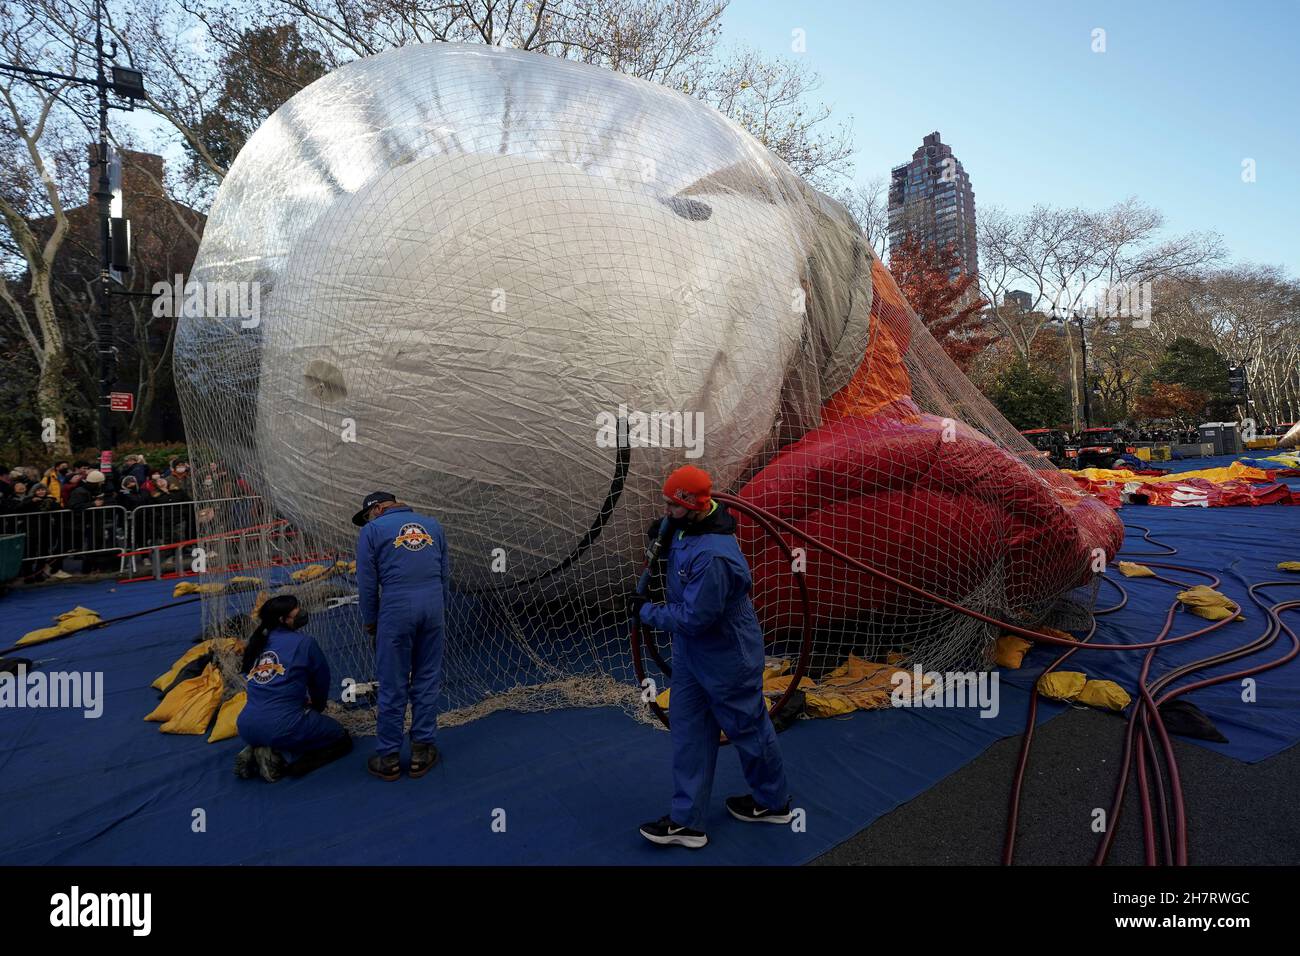 Snoopy balloon where Banque de photographies et d'images à haute résolution  - Alamy